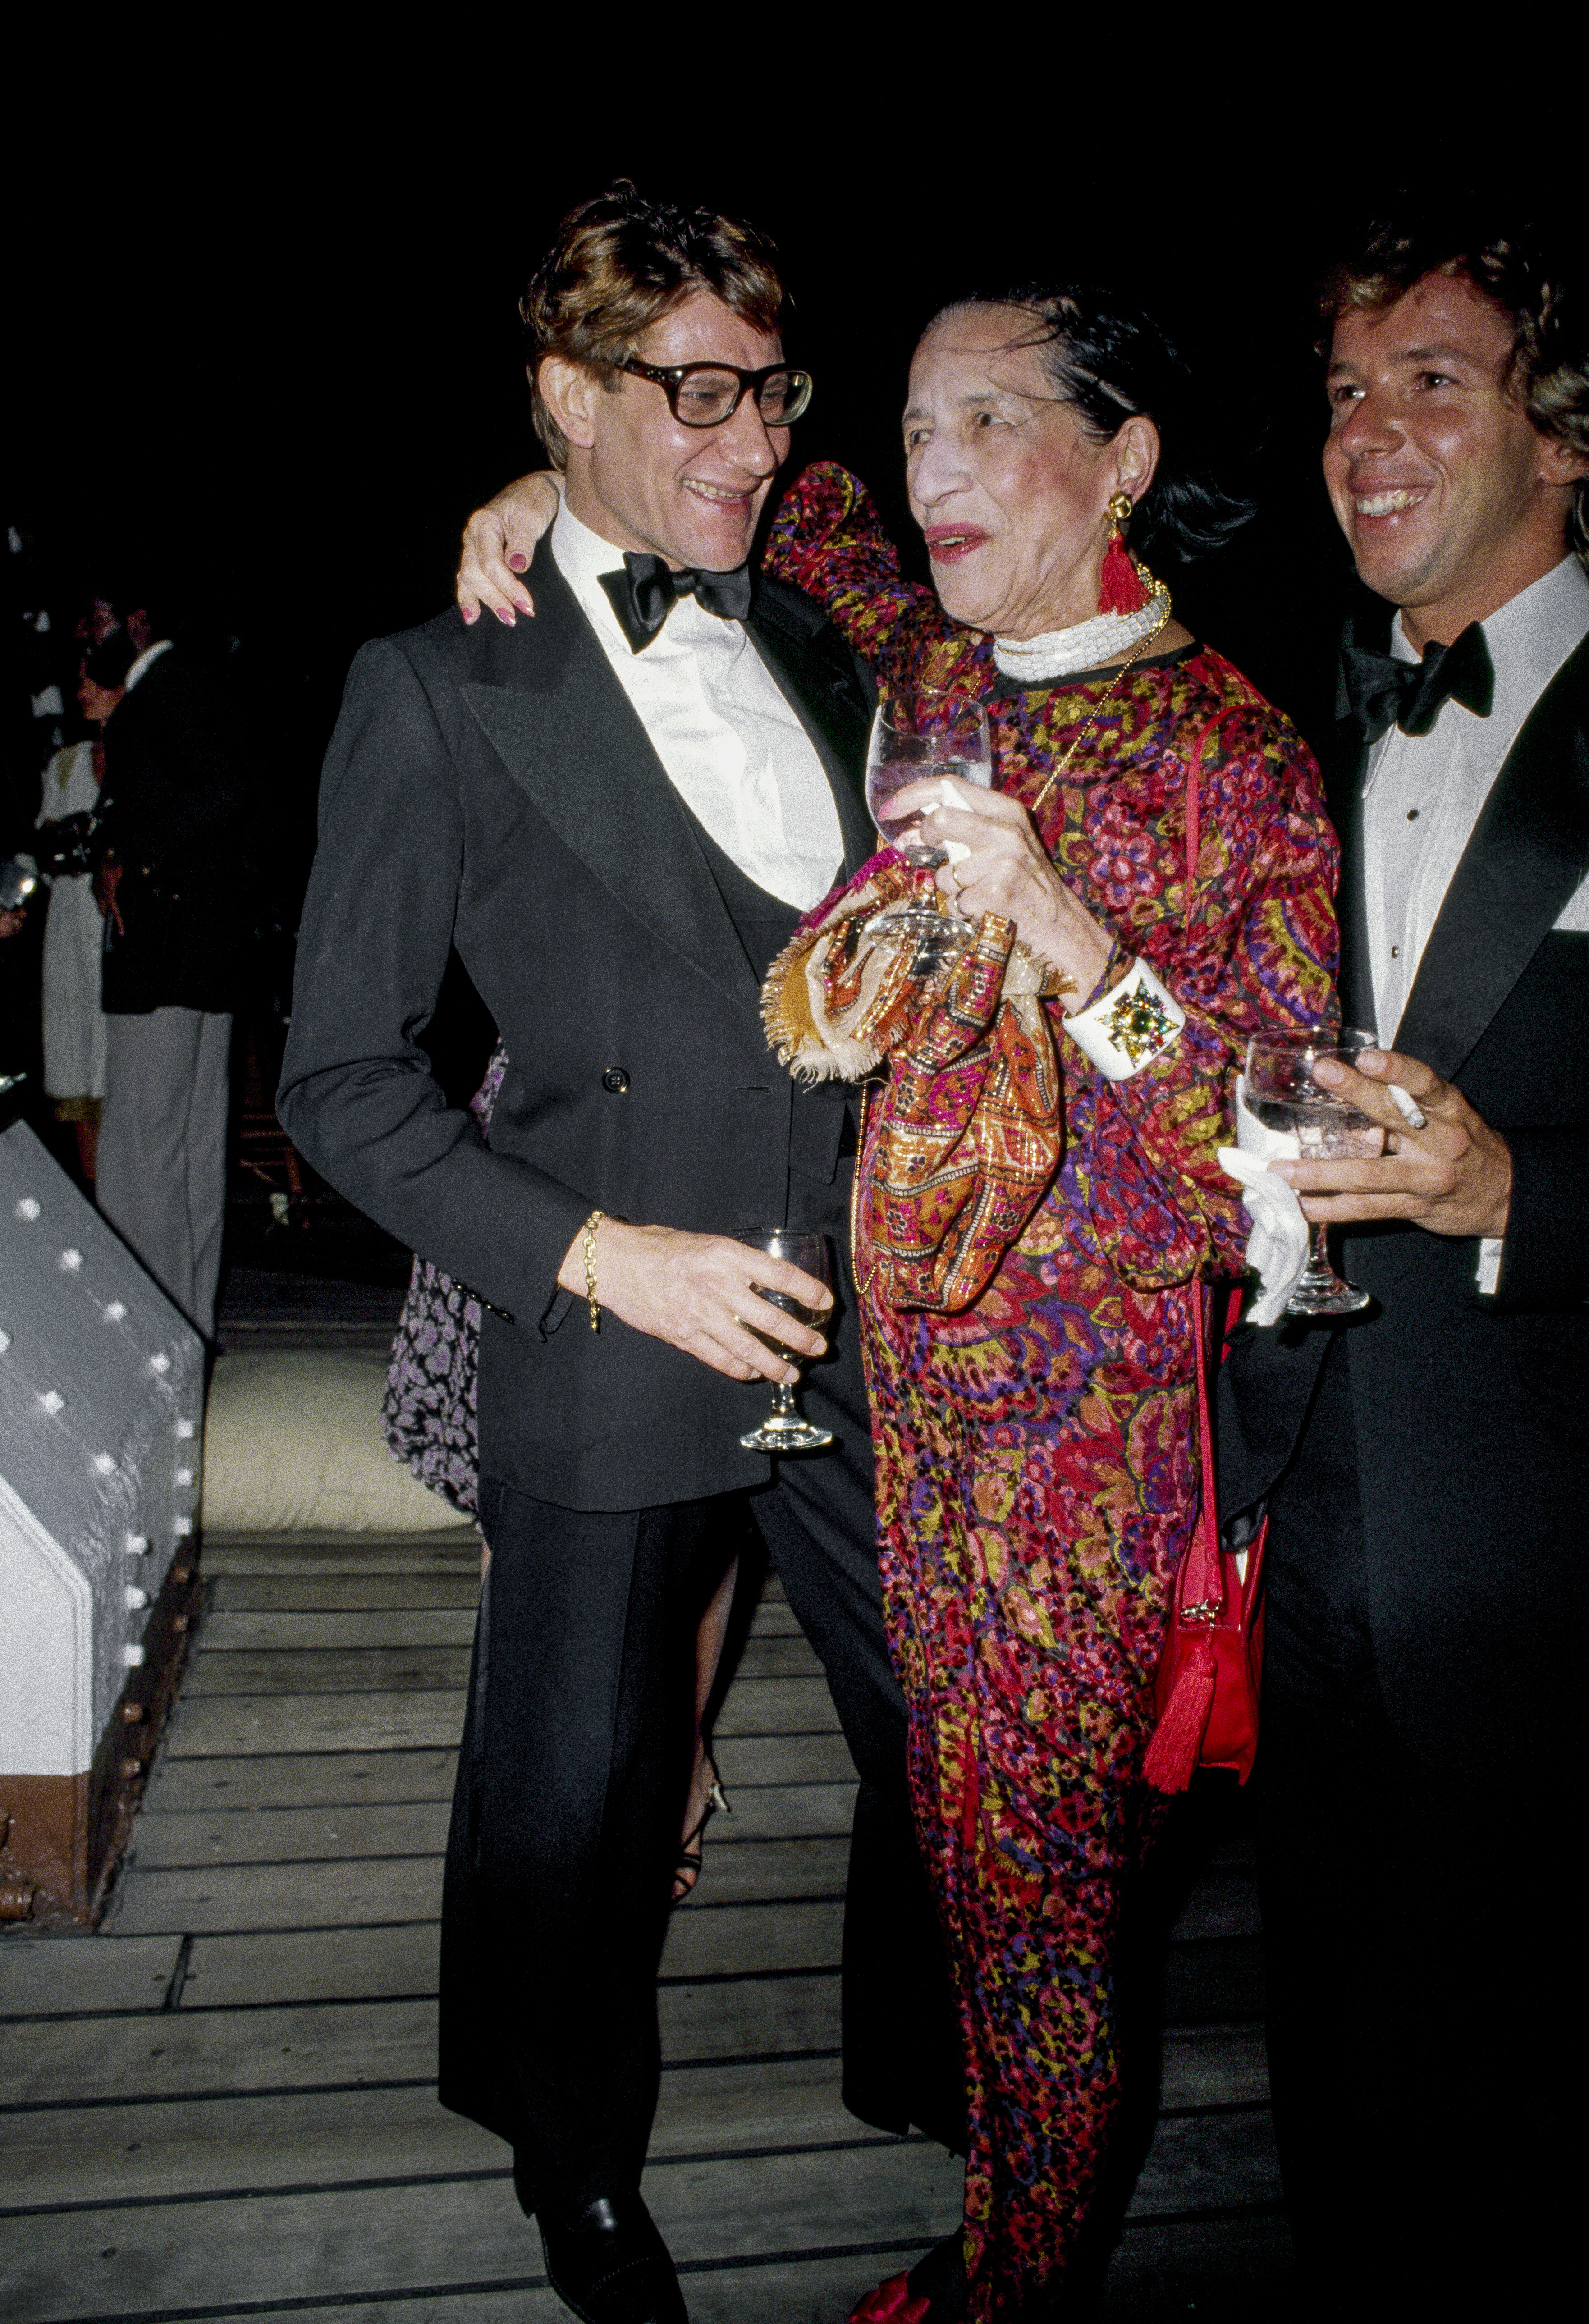 YVES SAINT LAURENT & DIANA VREELAND, NEW YORK, USA - 1981: Diana supo hacer muchas amistades entre ellas, con el diseñador francés Yves Saint Laurent. Aquí, juntos, en una fiesta lanzamiento de una fragancia, en 1981